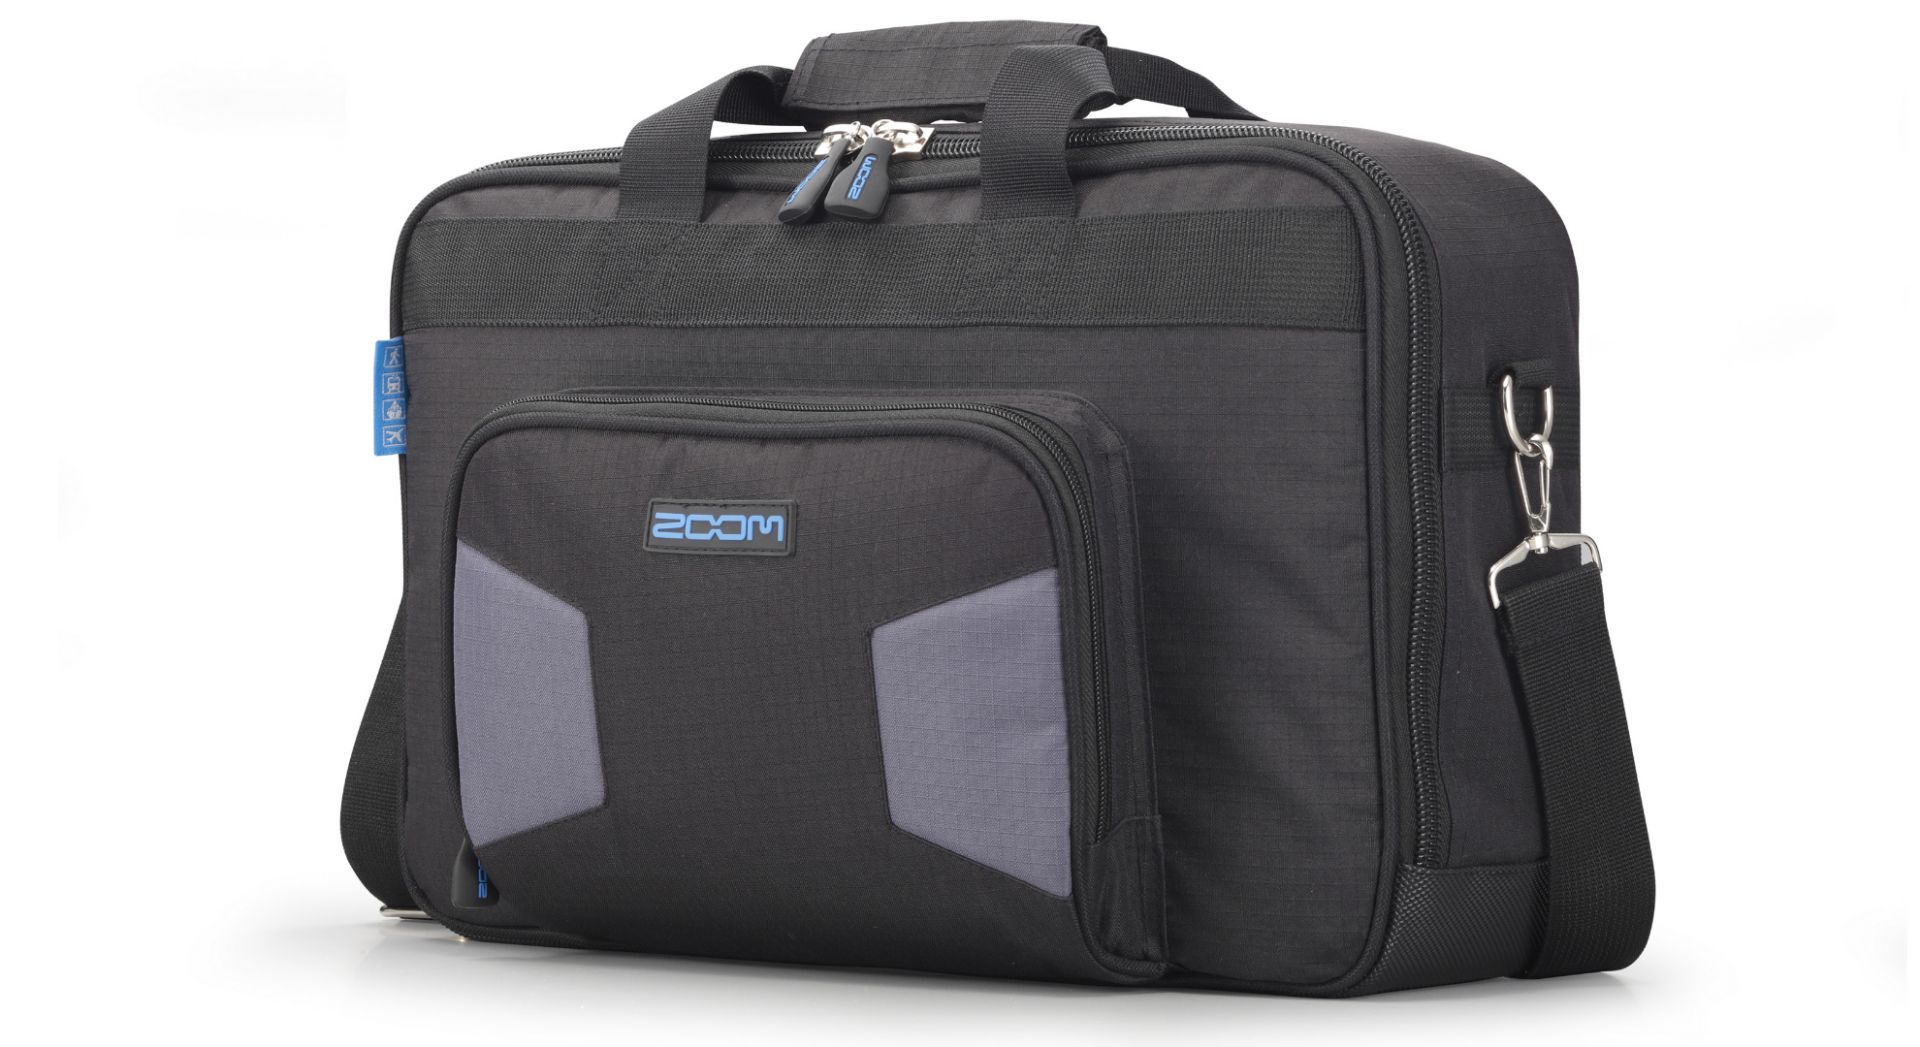 Zoom SCR 16 Bag